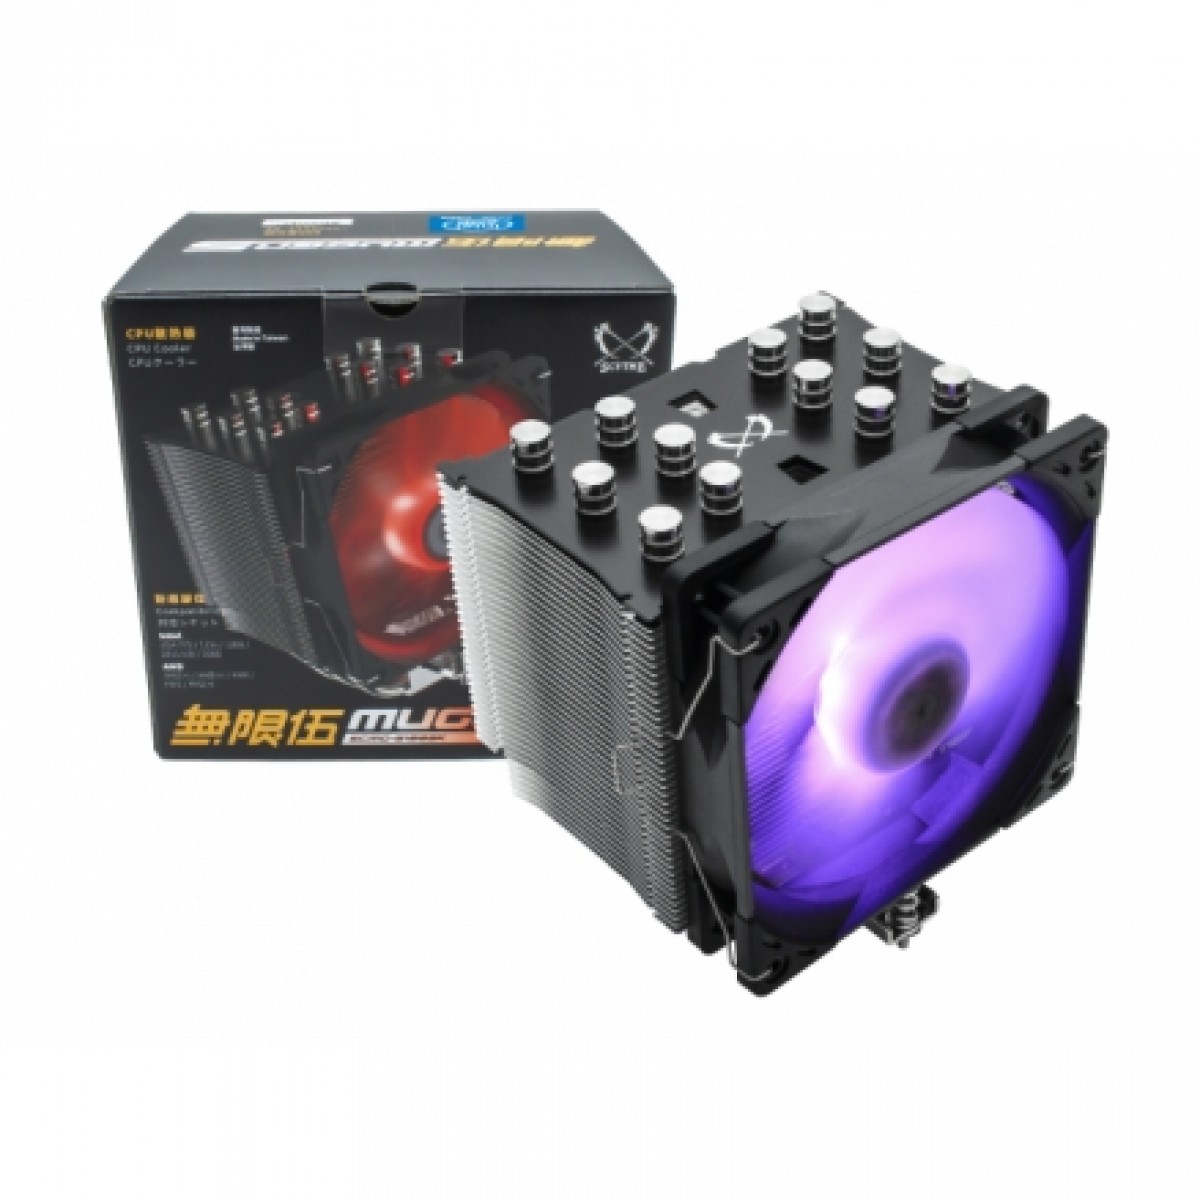 Cooler para Processador Scythe Mugen 5 Rgb Edition 120mm, Intel-AMD, SCMG-5100BK